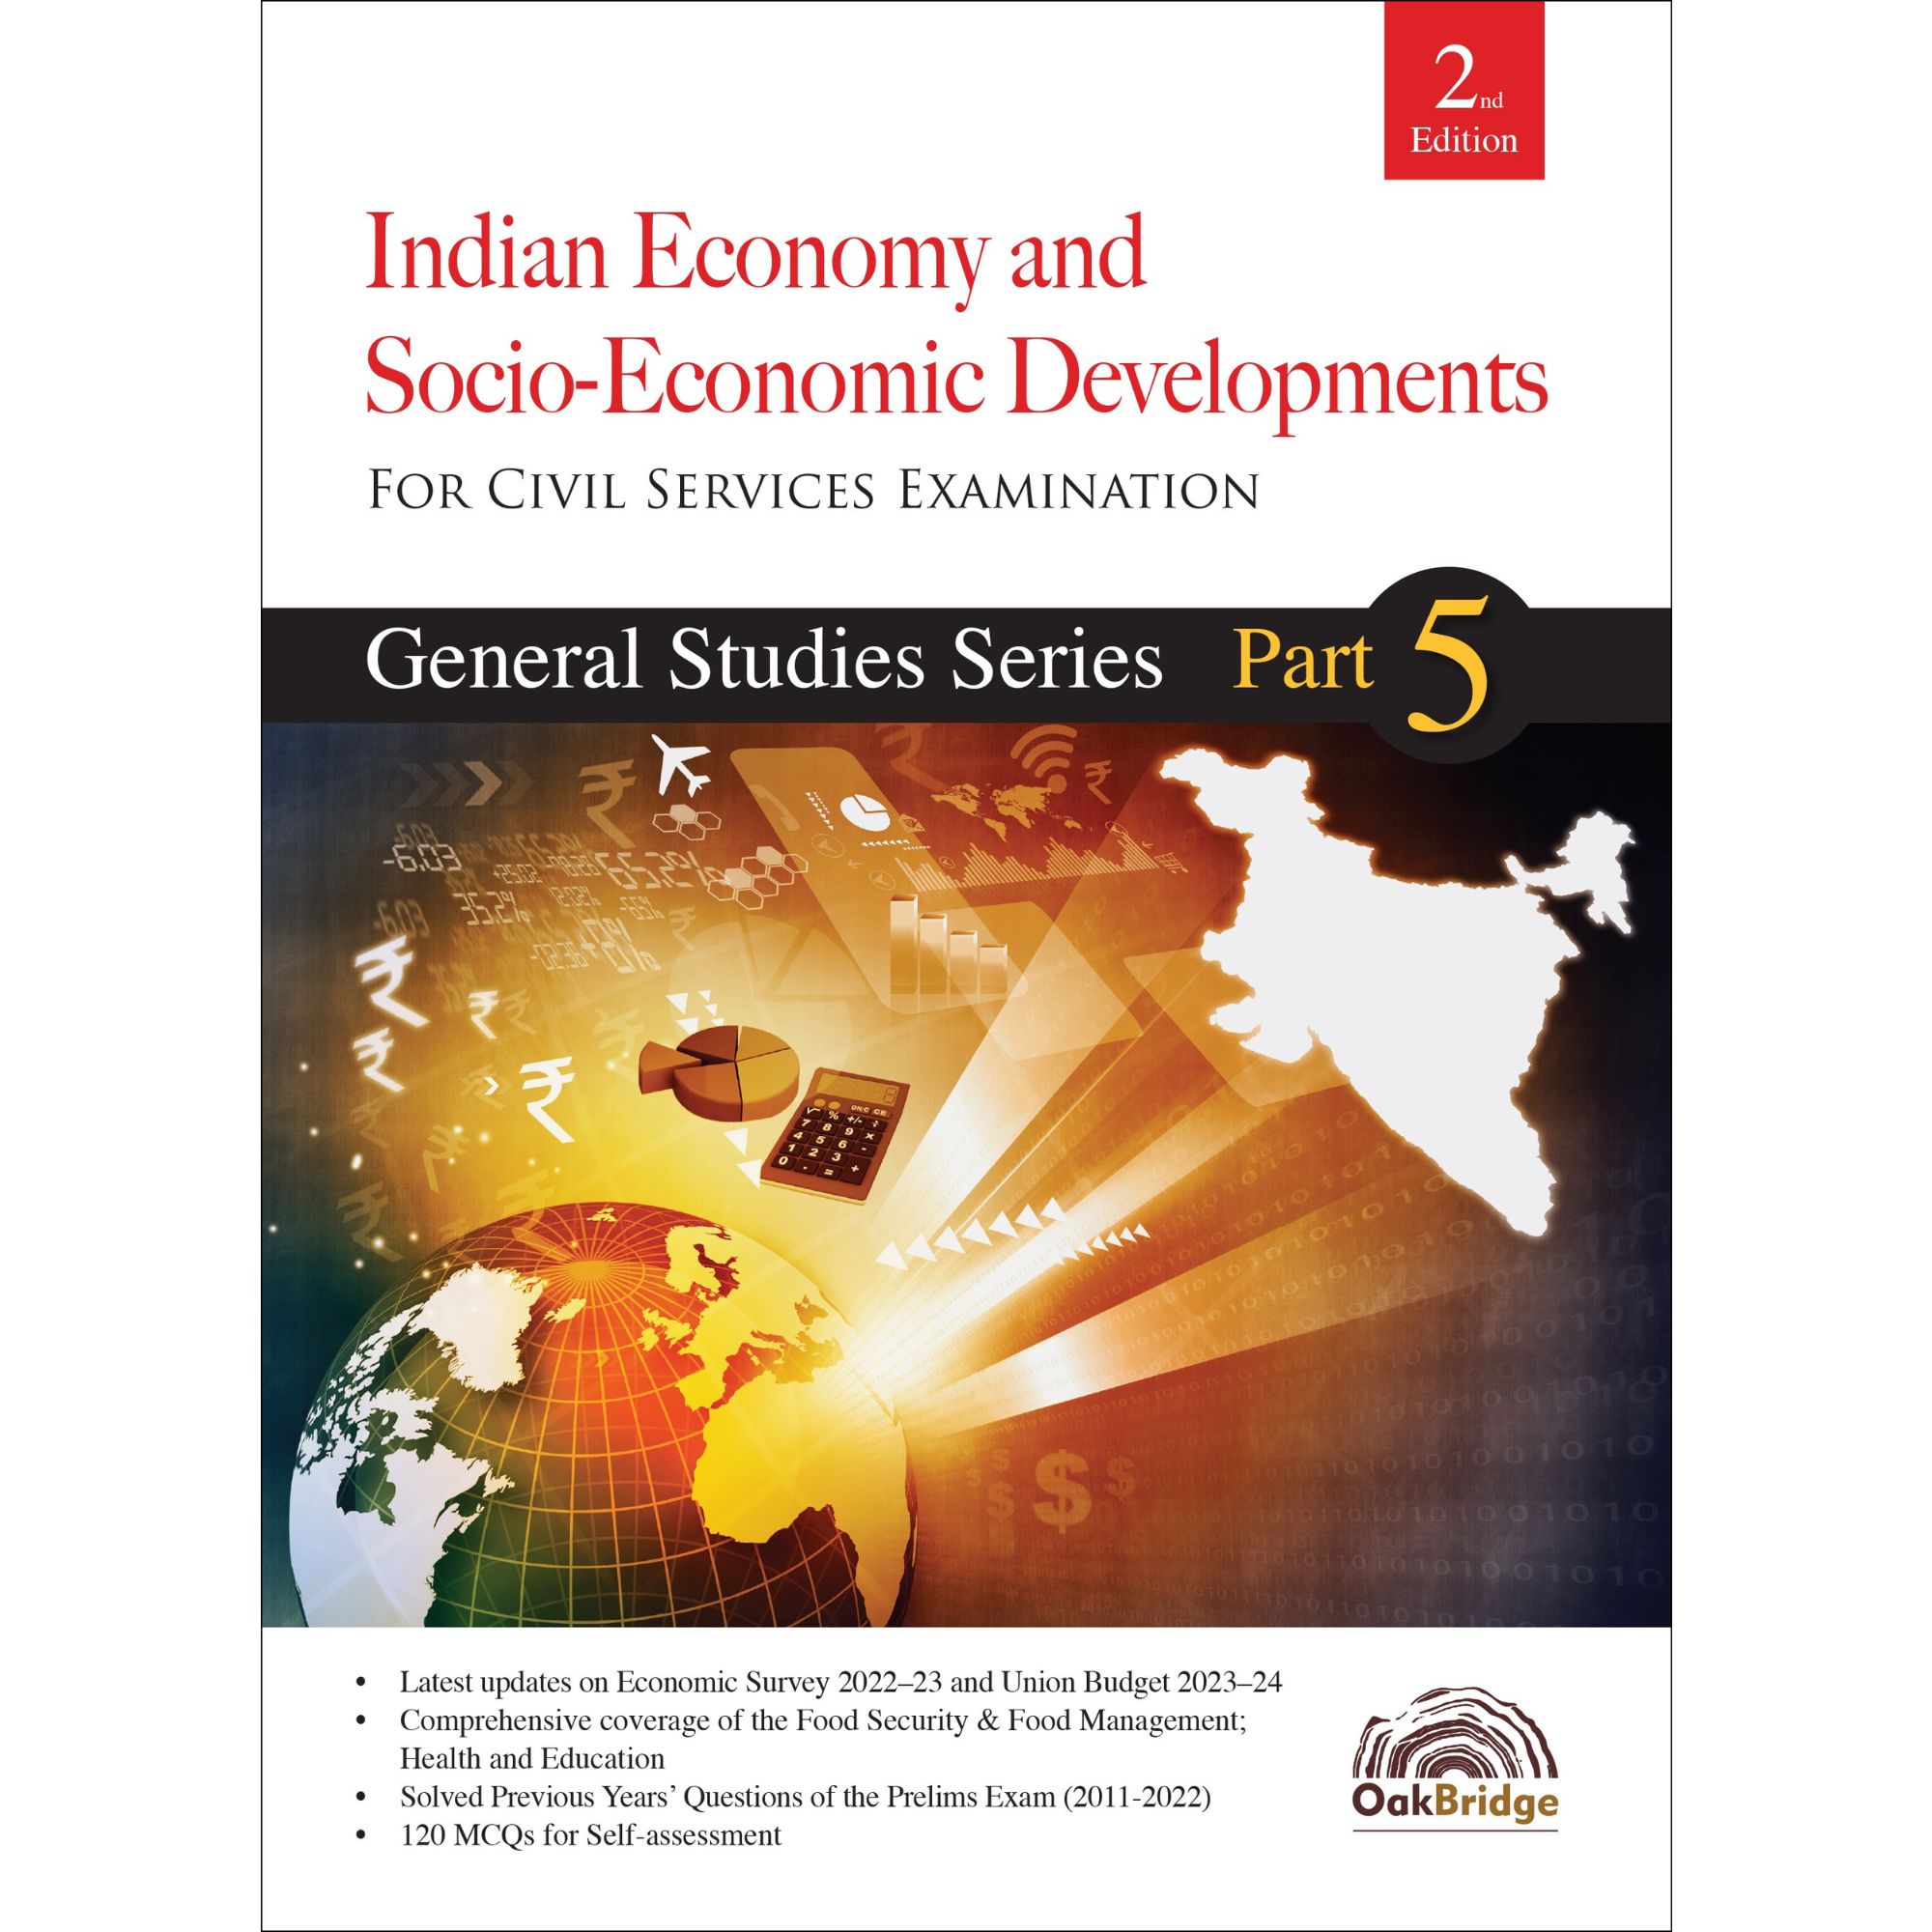 General Studies Series Part 5 -Indian Economy and Socio-Economic Developments